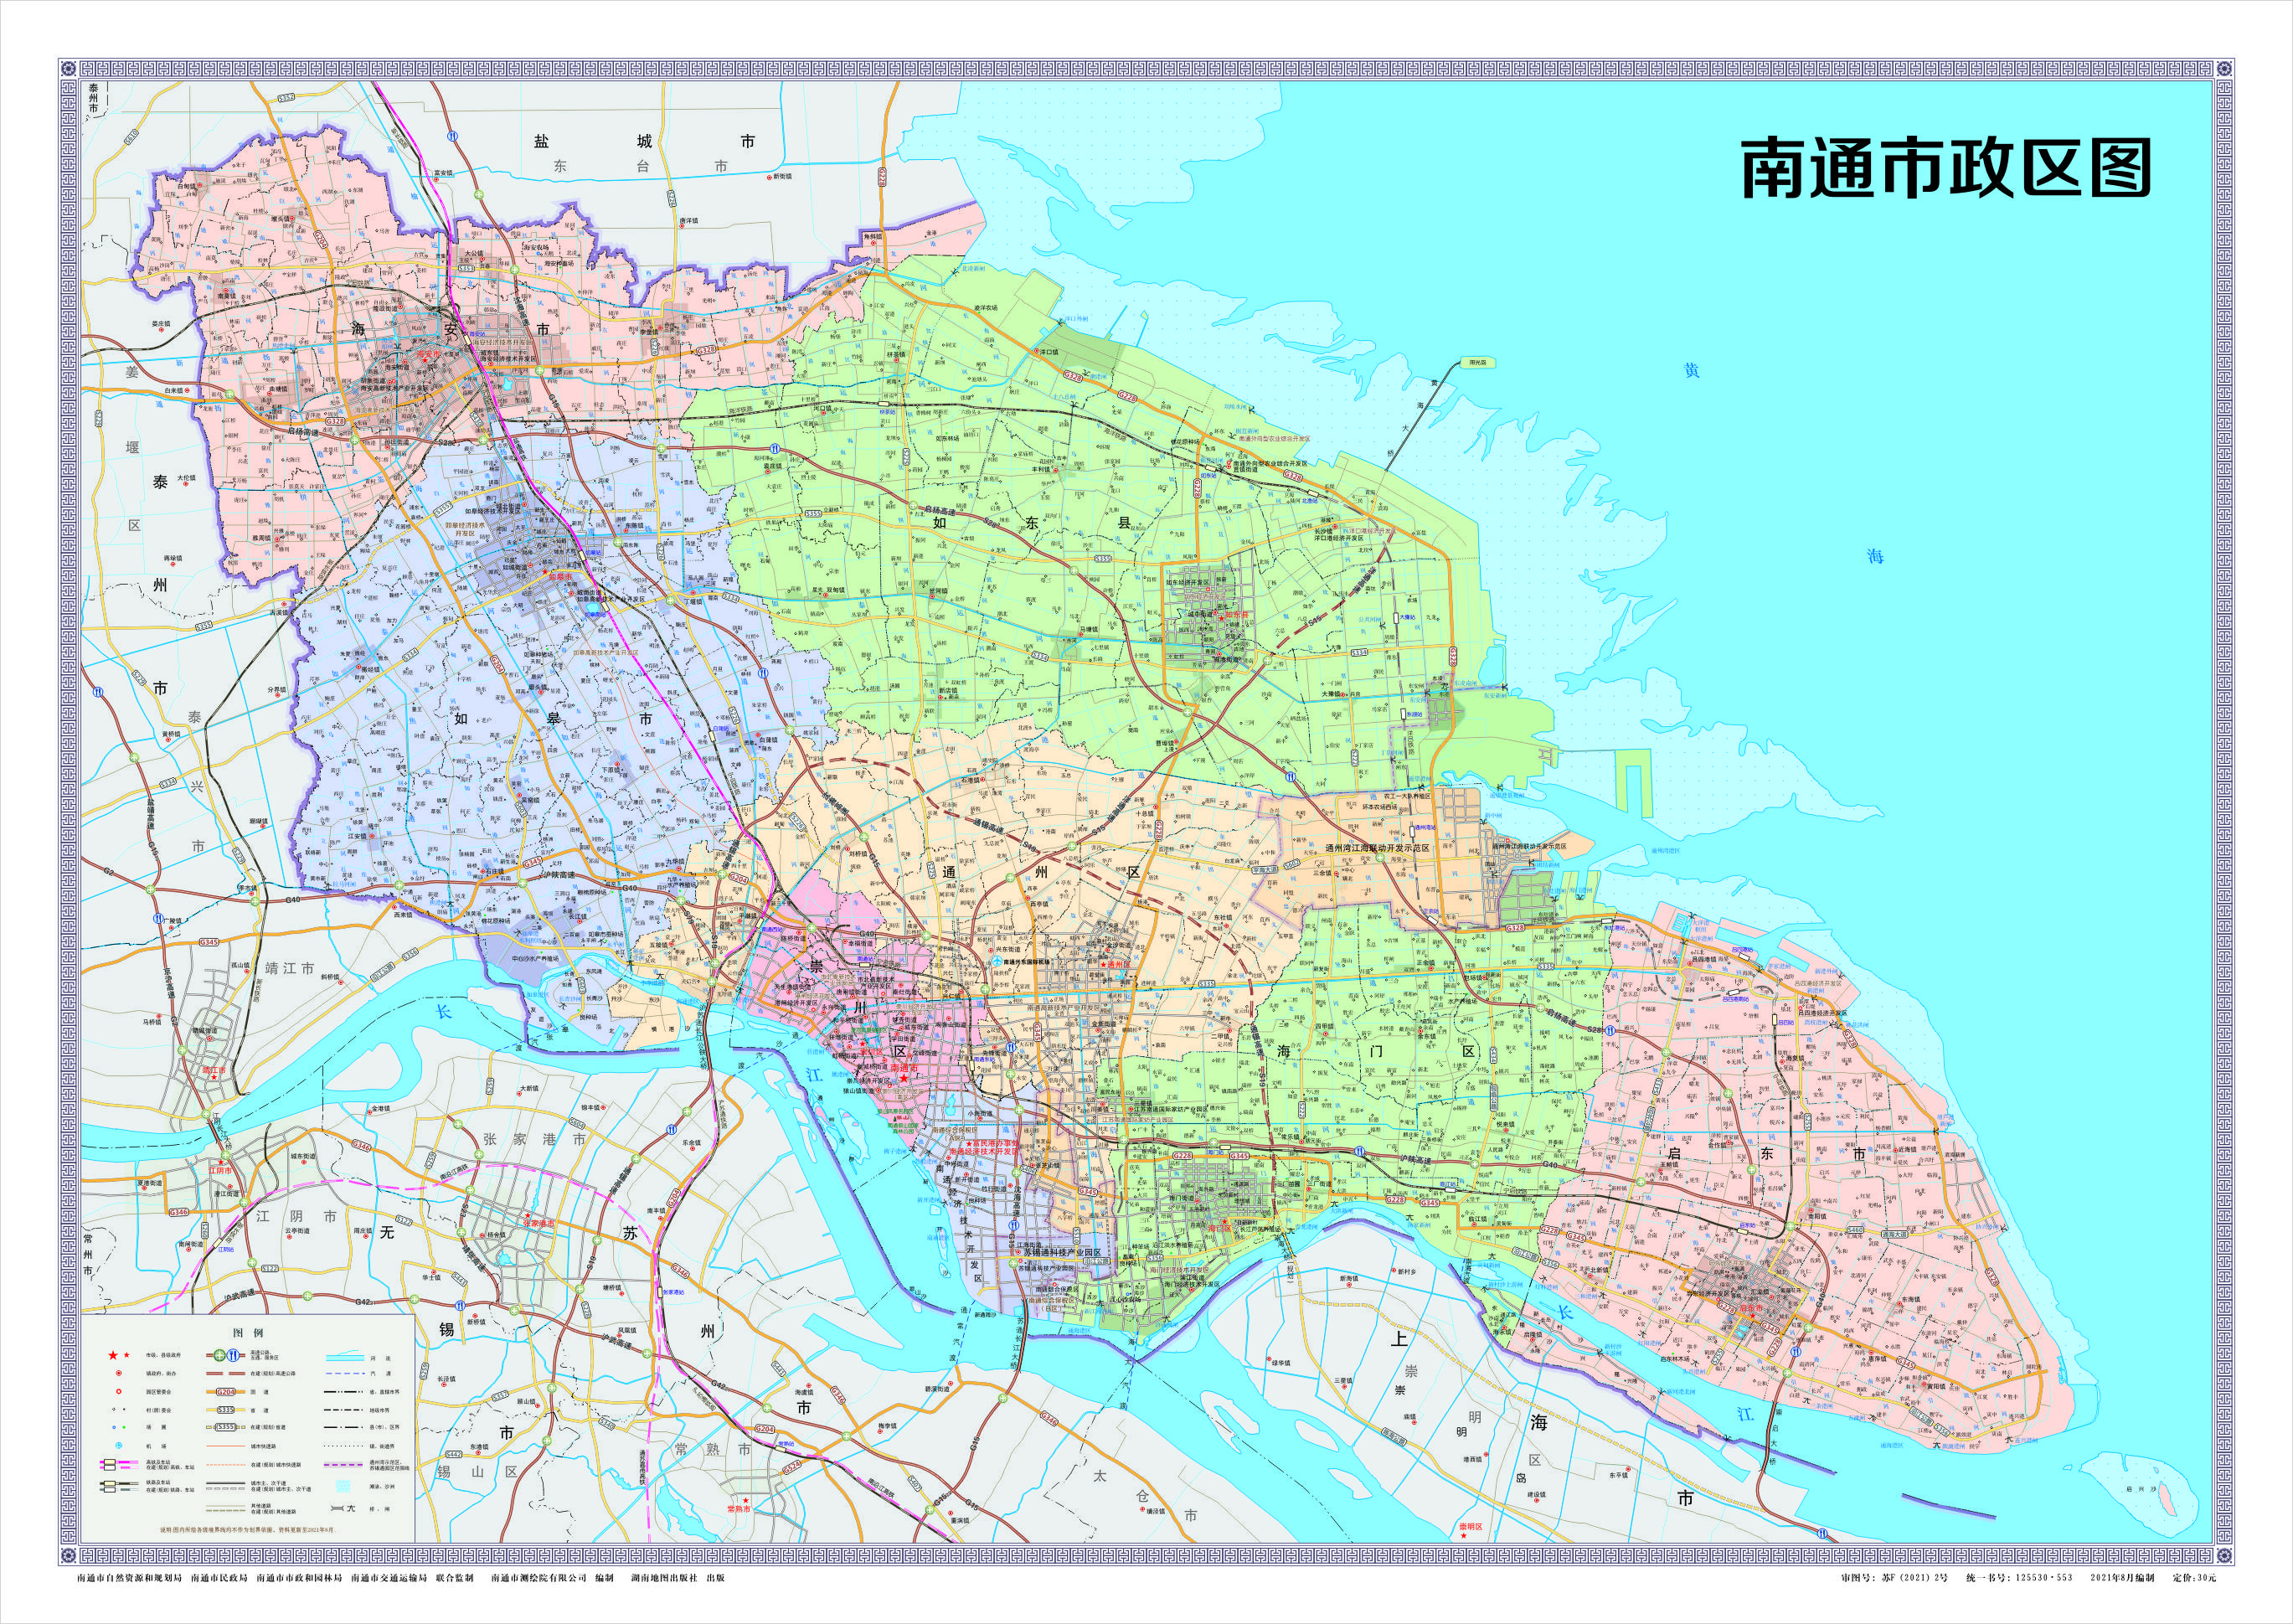 南通市区划分地图图片